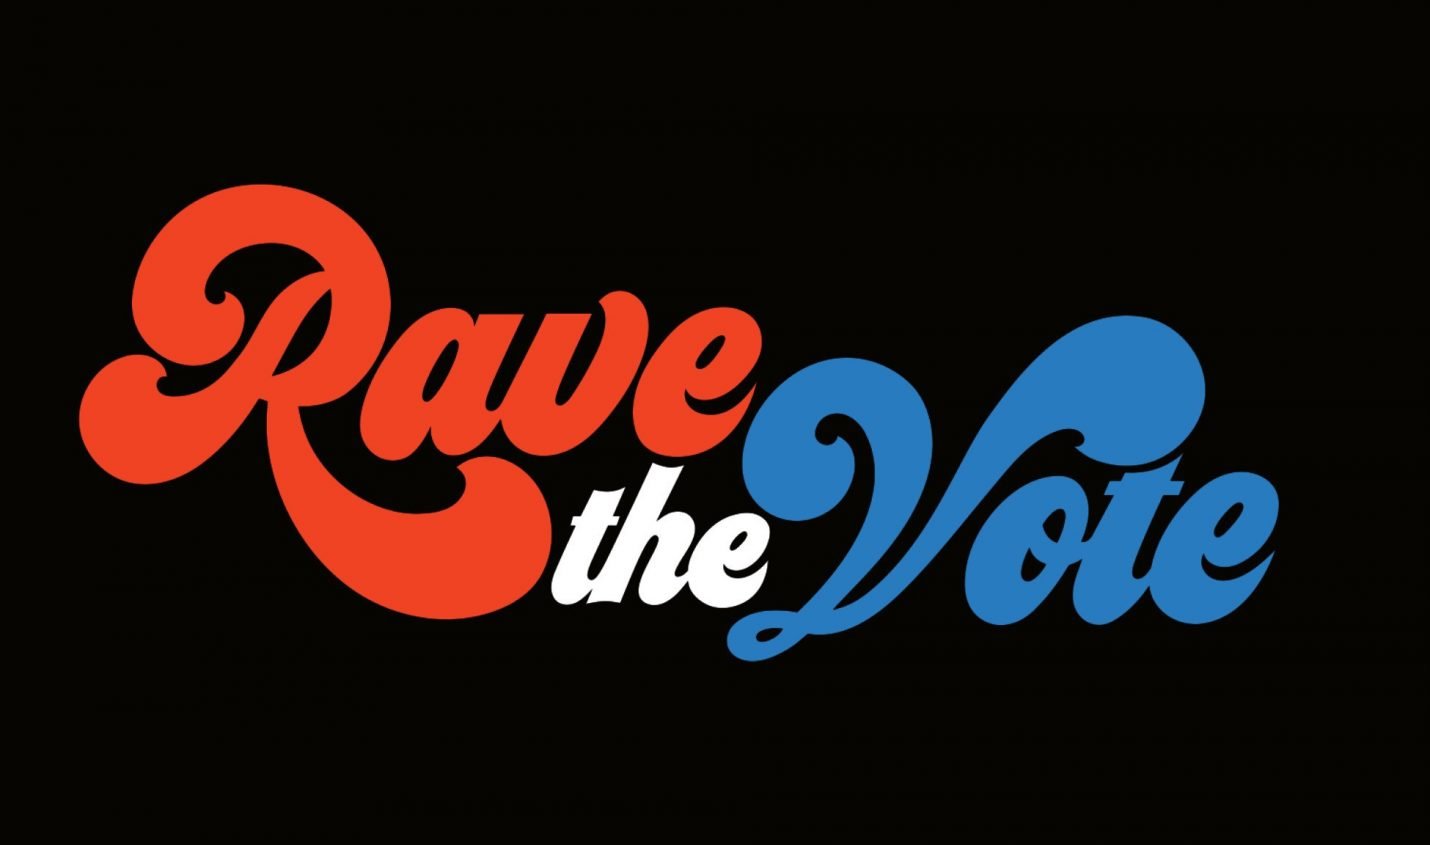 Rave the Vote: Digitales Festival ruft zur Teilnahme an US-Wahlen auf